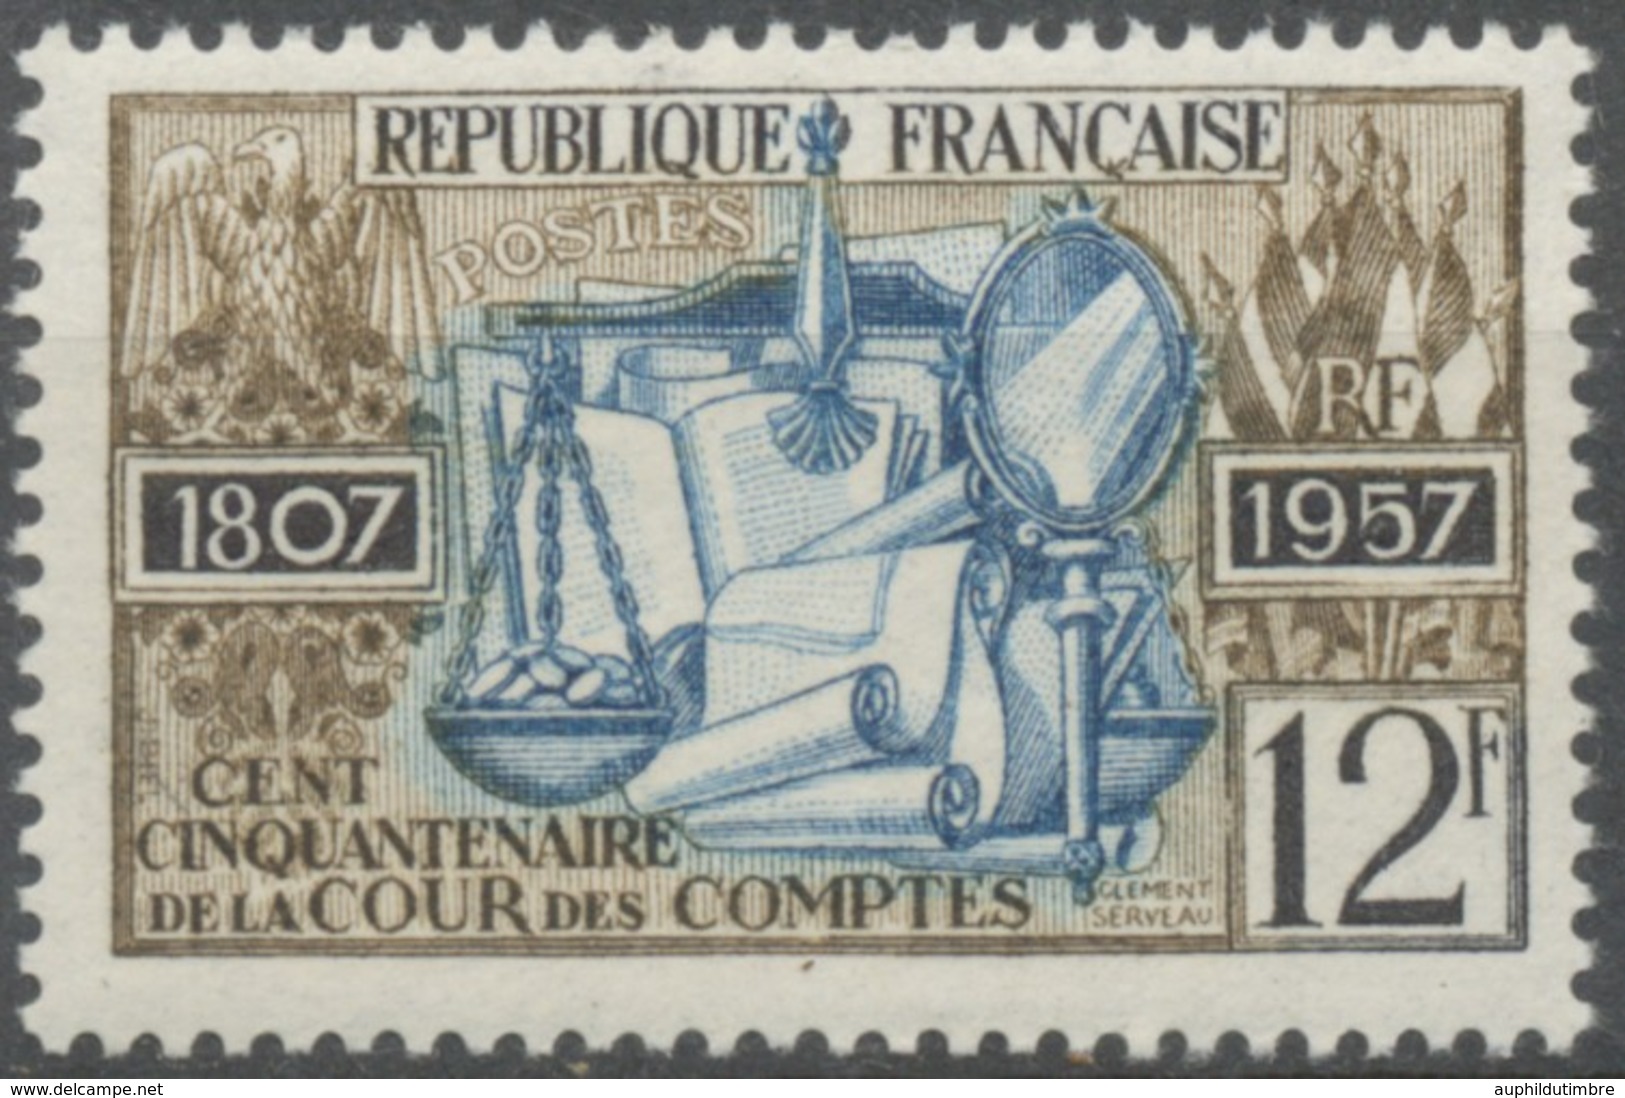 Sesquicentenaire De La Cour Des Comptes. 12f. Brun-olive, Noir Et Bleu. Neuf Luxe ** Y1107 - Nuevos